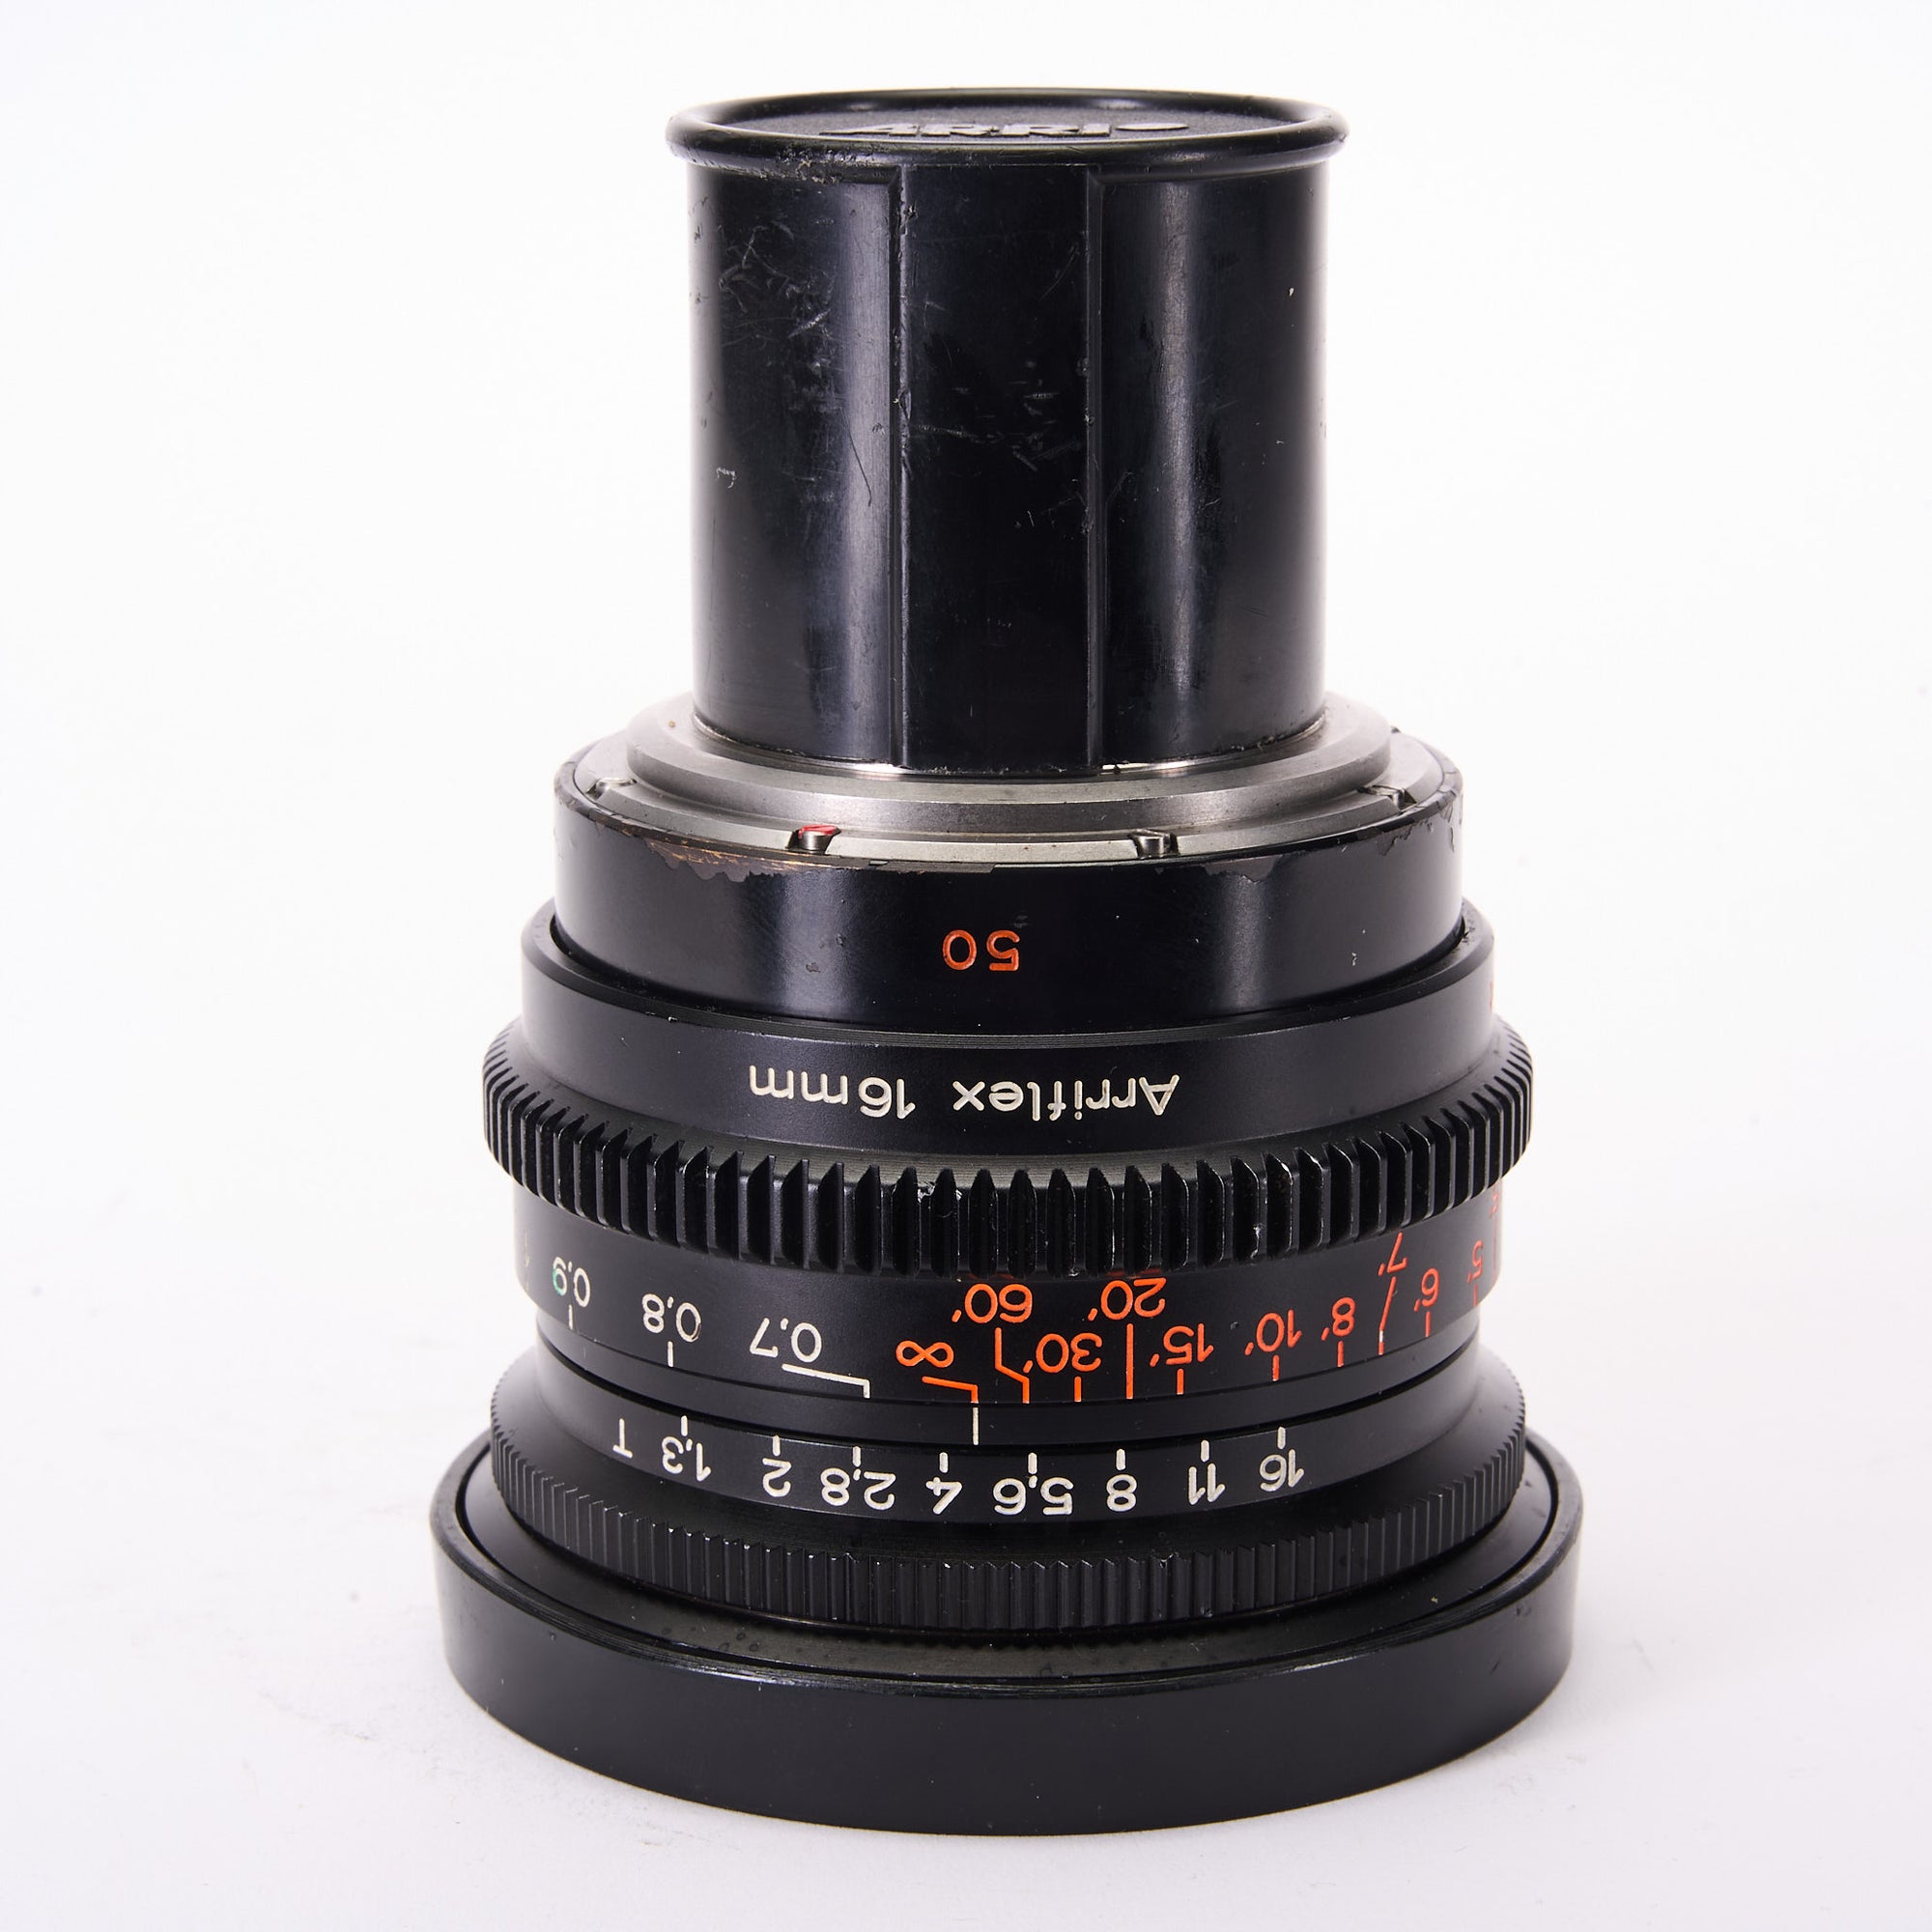 aLENS3580-7398265 Arriflex:Zeiss Super 16mm Super Speed 50mm T1.3 B-Mount Lens.jpg